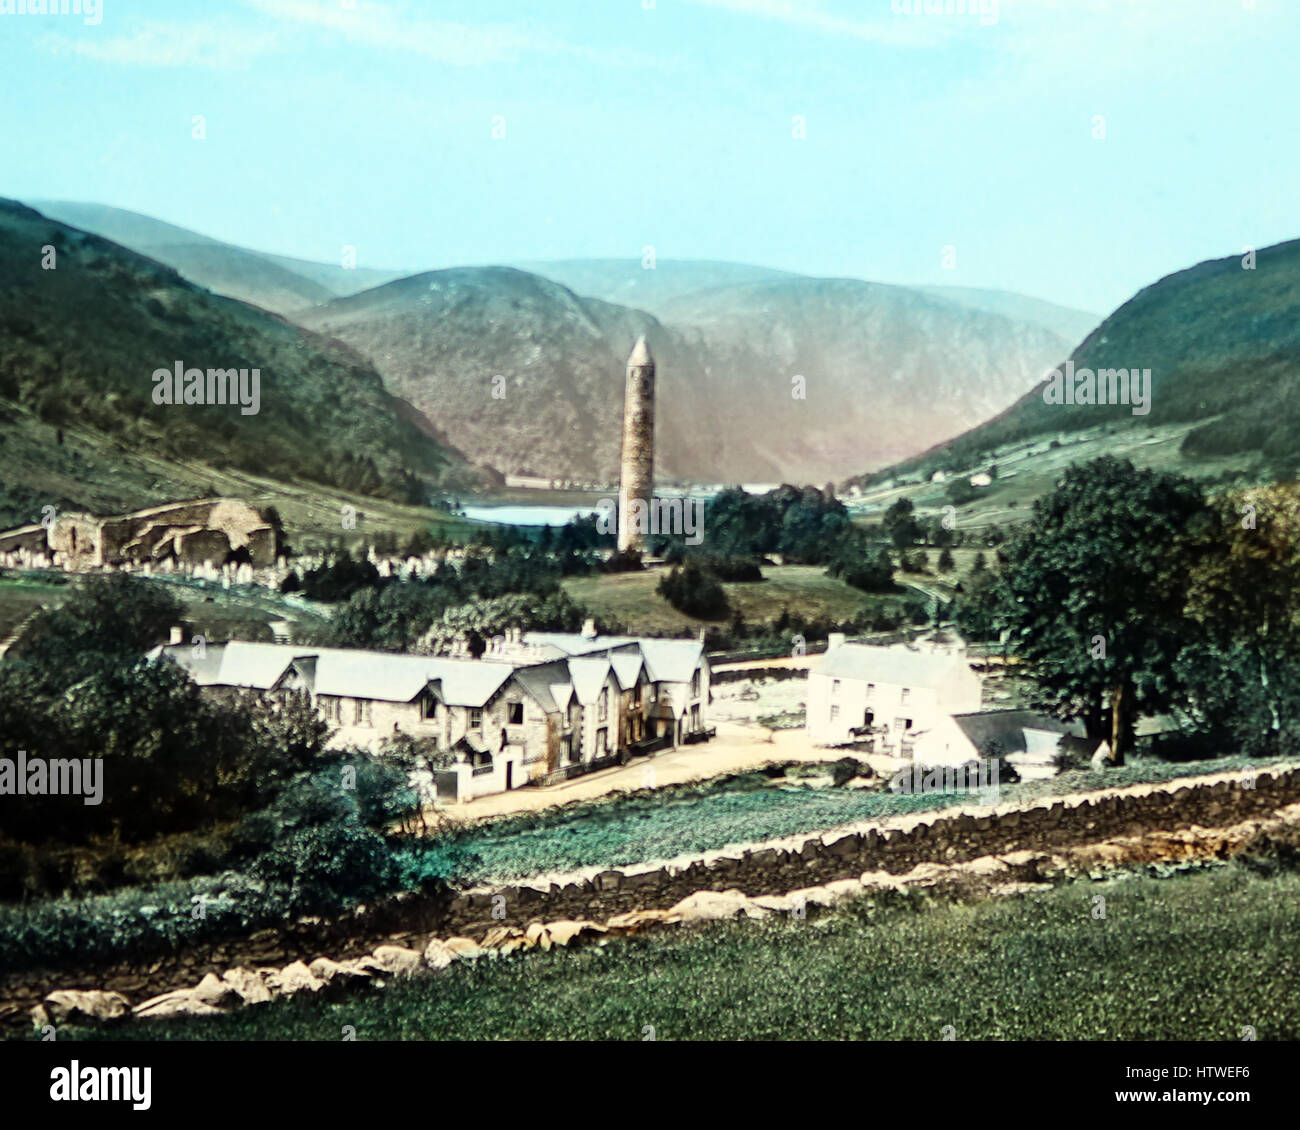 Glendalough Valley, comté de Wicklow, Irlande - main photo colorée - période victorienne Banque D'Images